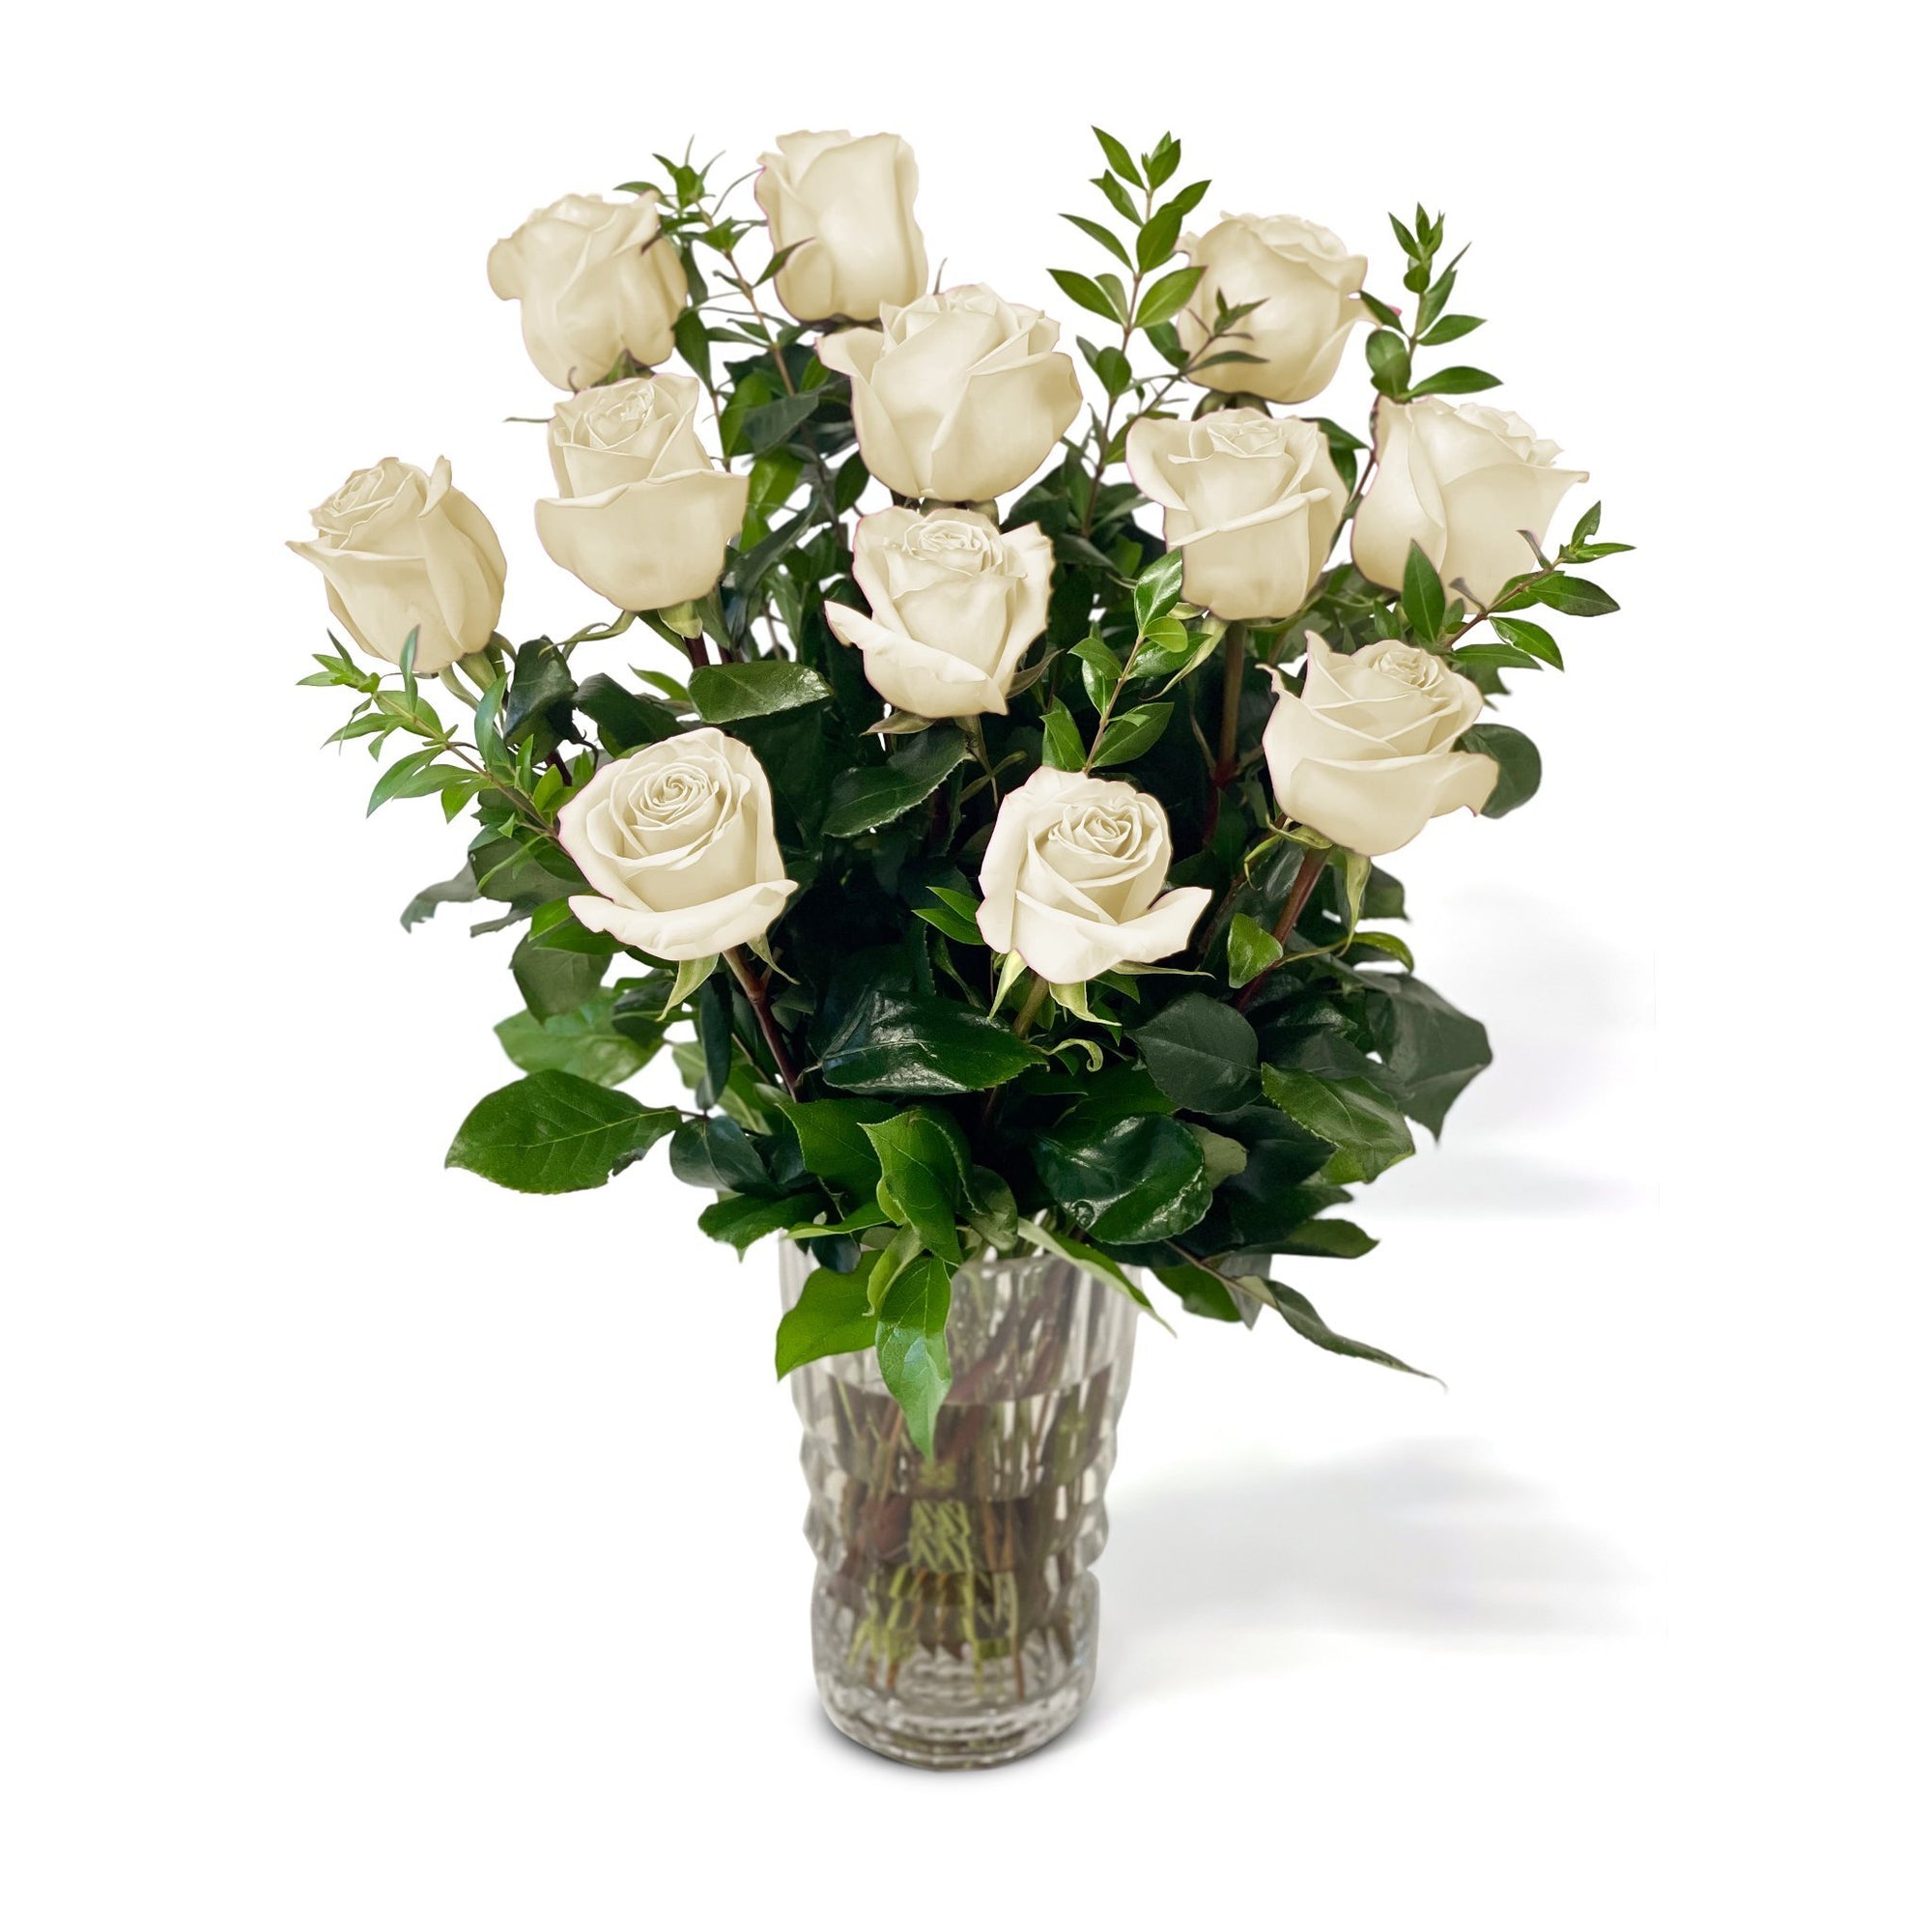 Fresh Roses in a Crystal Vase | Dozen White - Roses